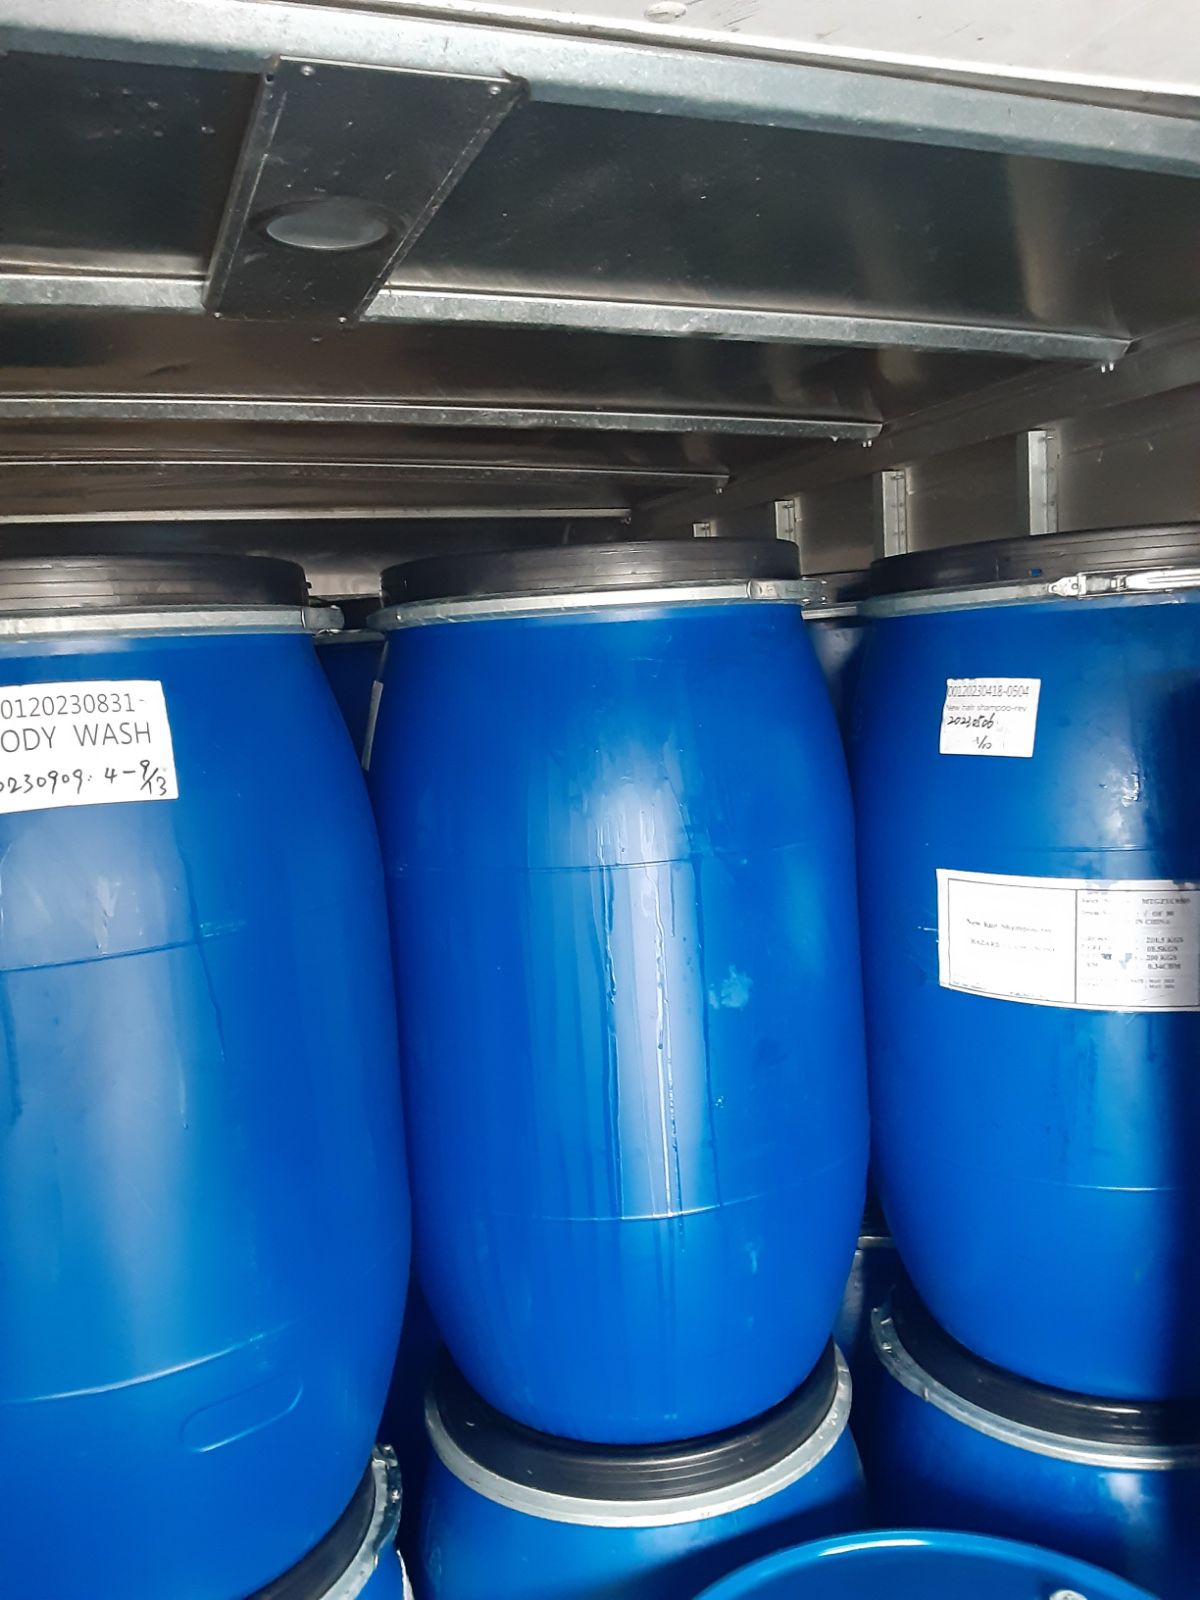 55 Gallon Plastic Barrel Removable Cover